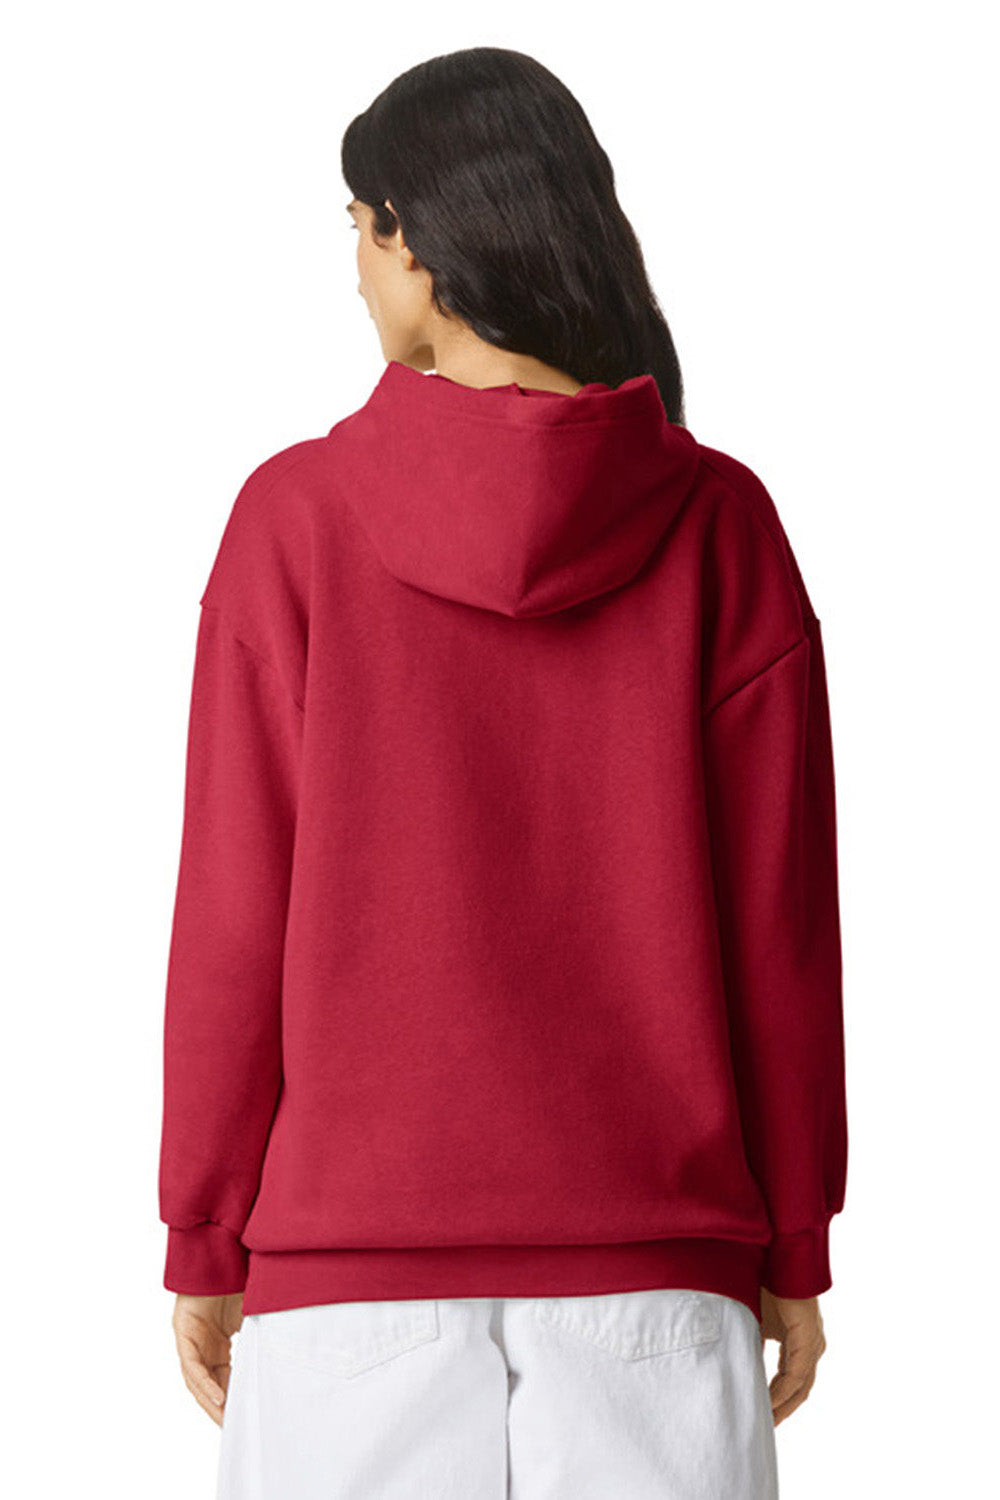 American Apparel RF498 Mens ReFlex Fleece Hooded Sweatshirt Hoodie Cardinal Red Model Back